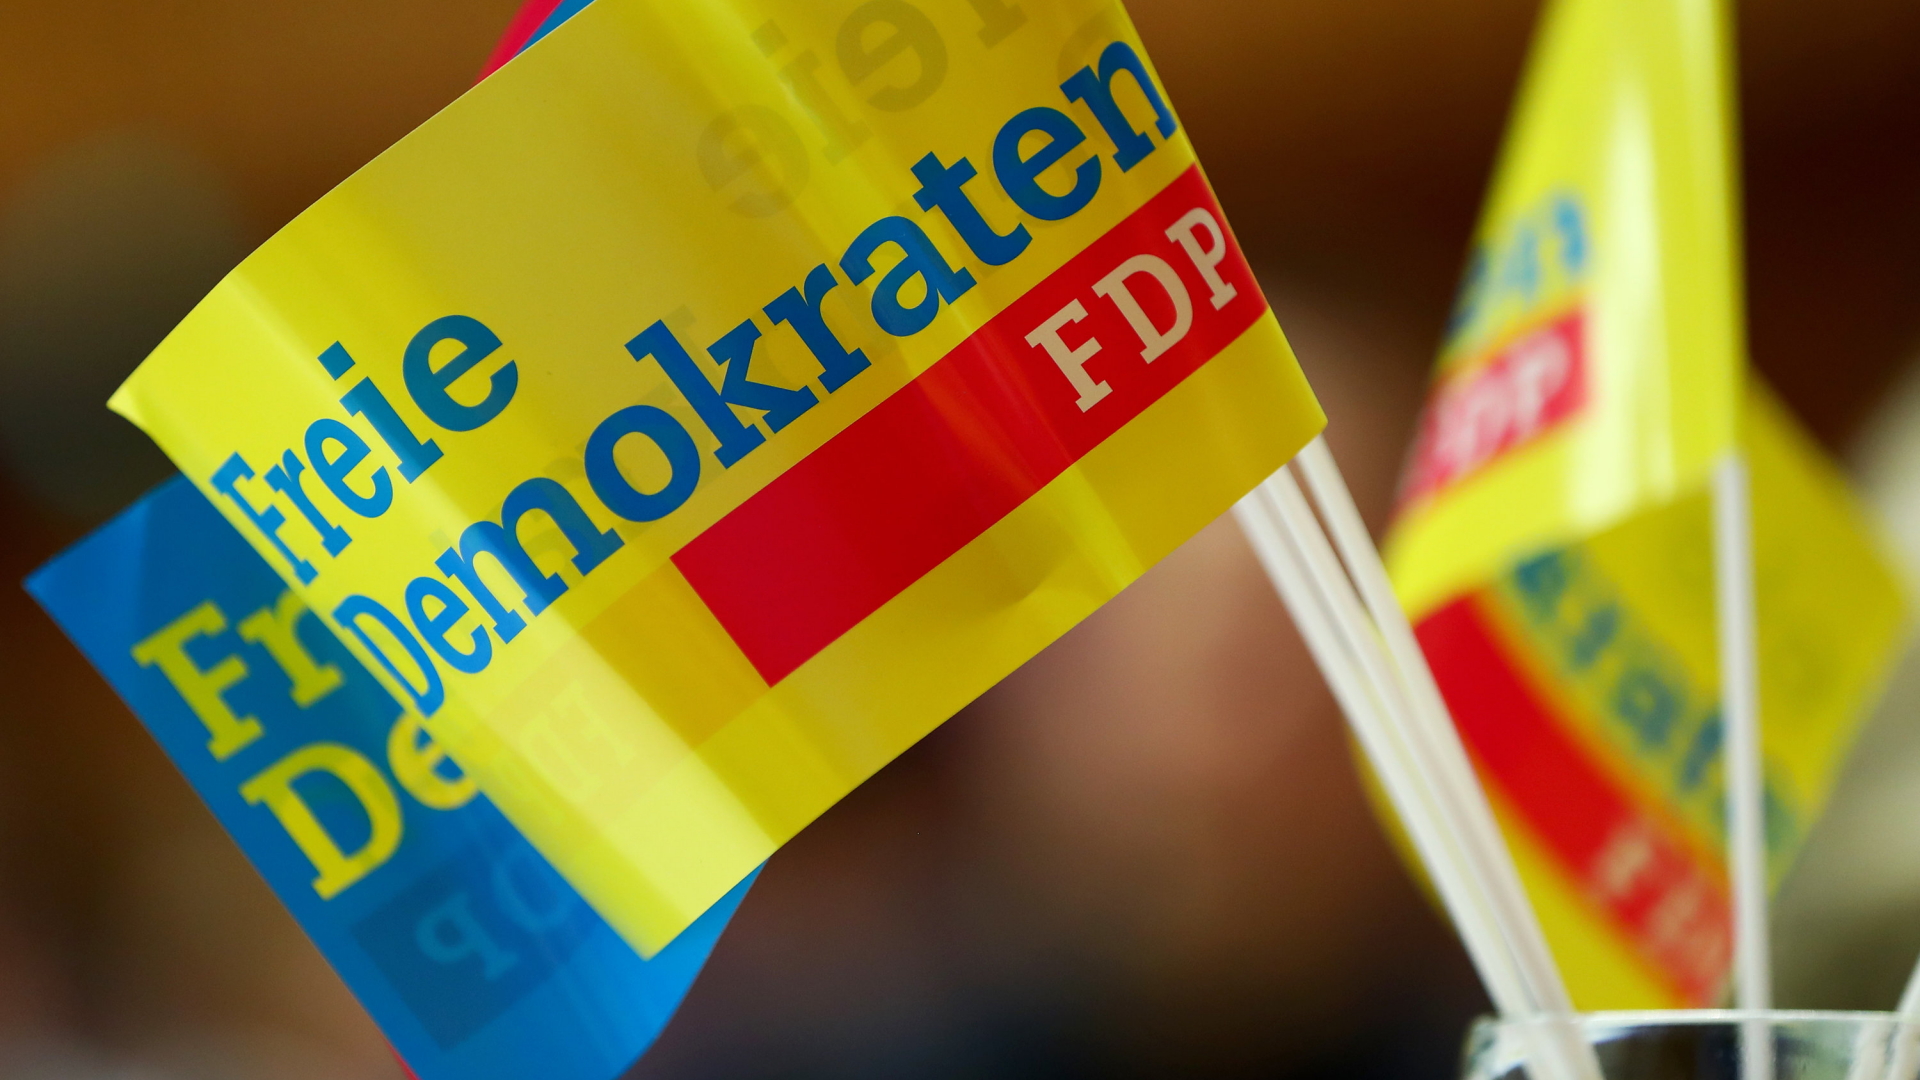 Fähnchen mit dem Schriftzug "Freie Demokraten" und "FDP".